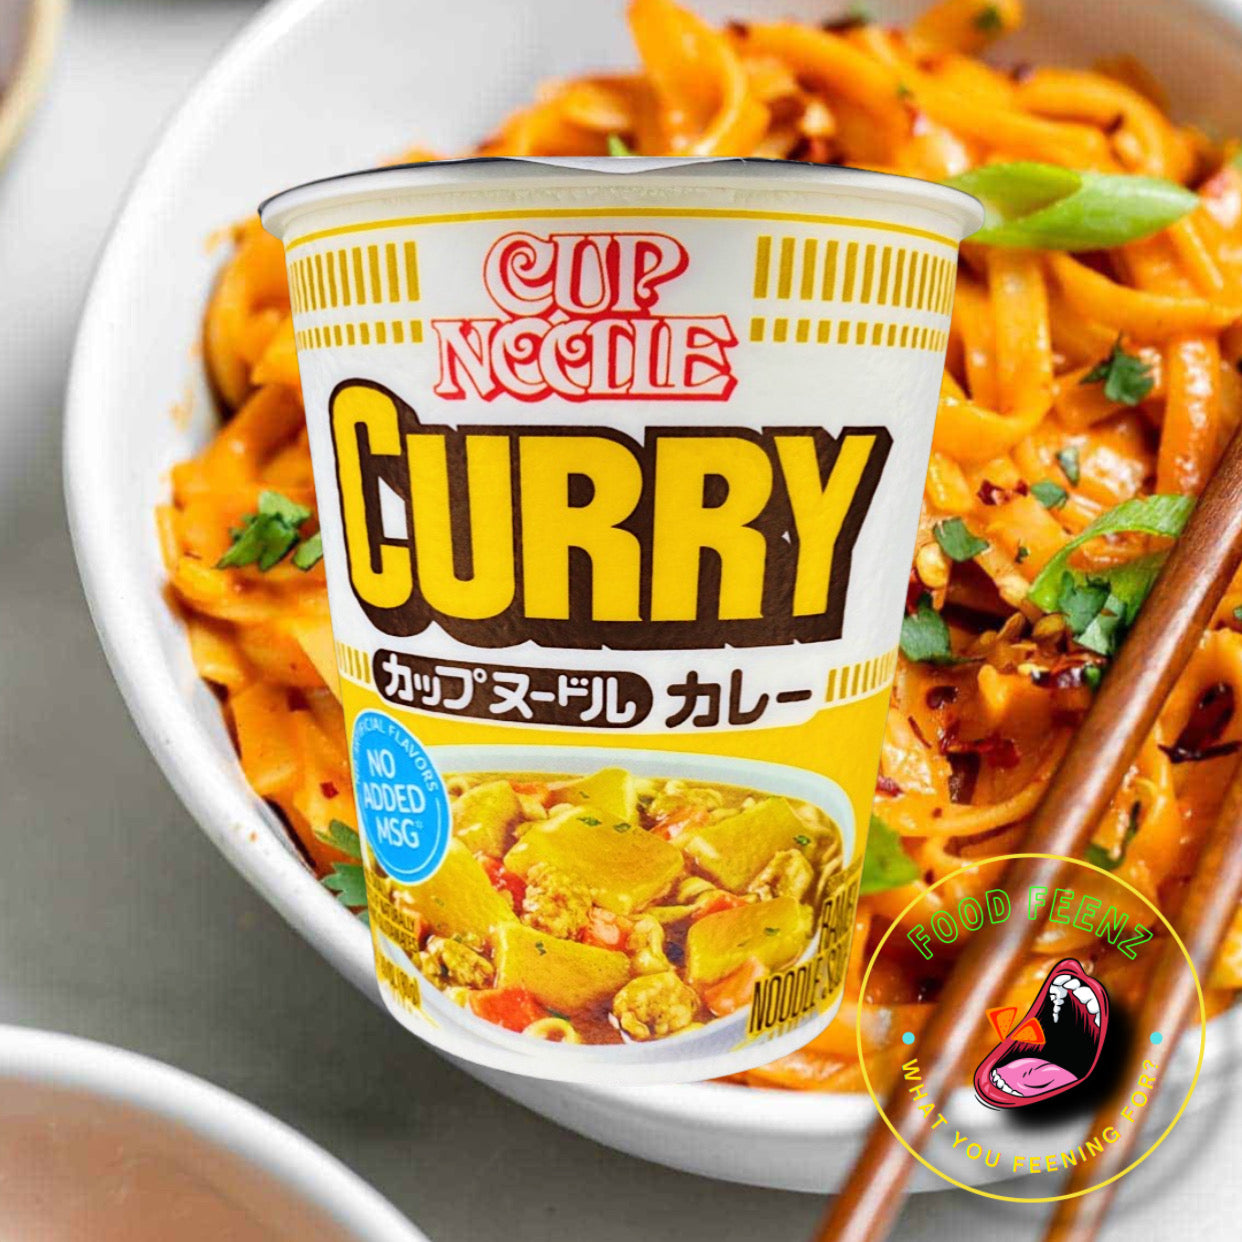 Cup Noodles Curry Flavor (Japan)